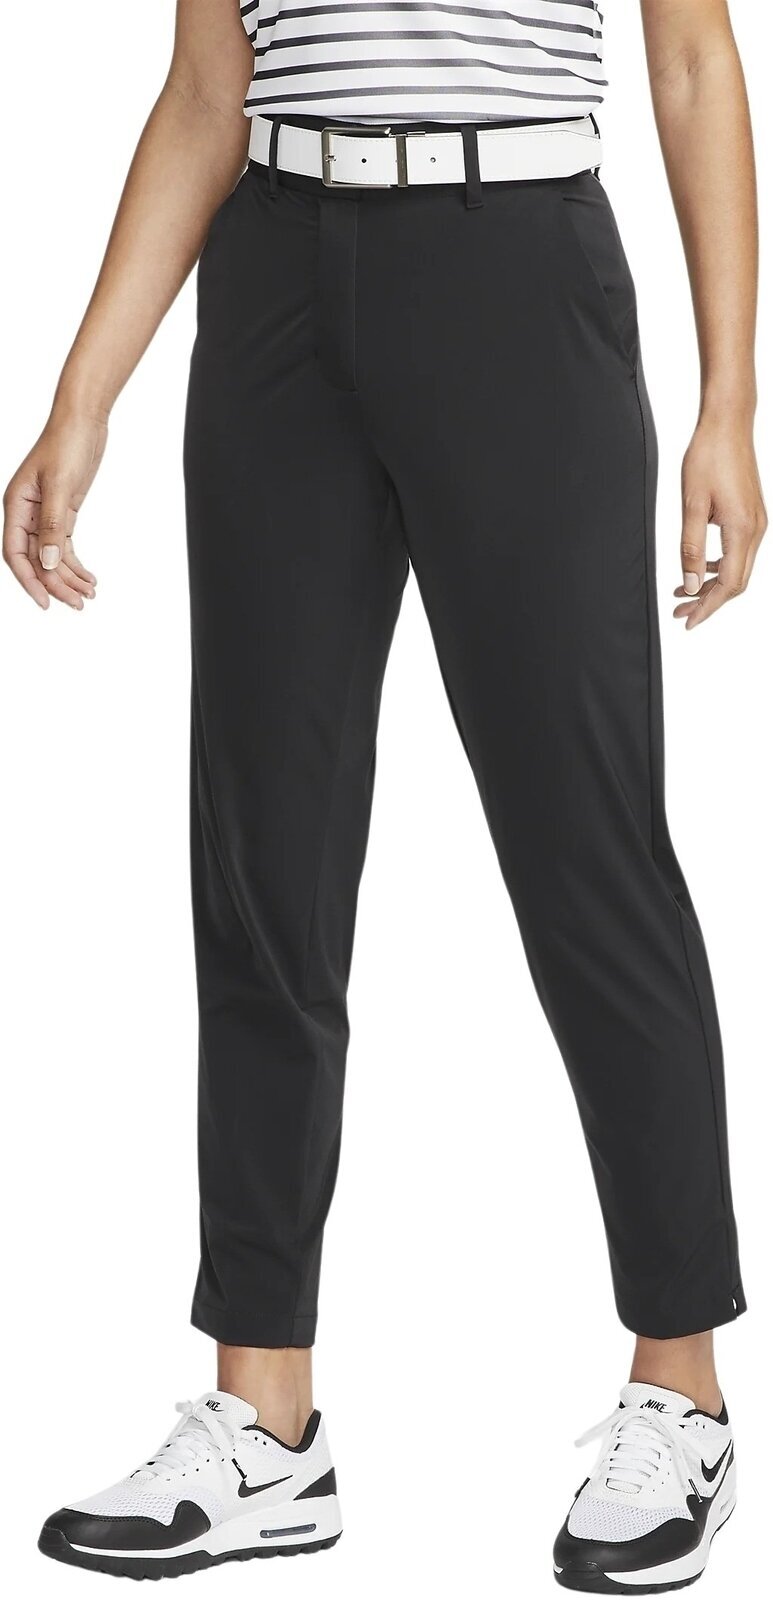 Pantalons Nike Dri-Fit Tour Womens Pants Black/White XS